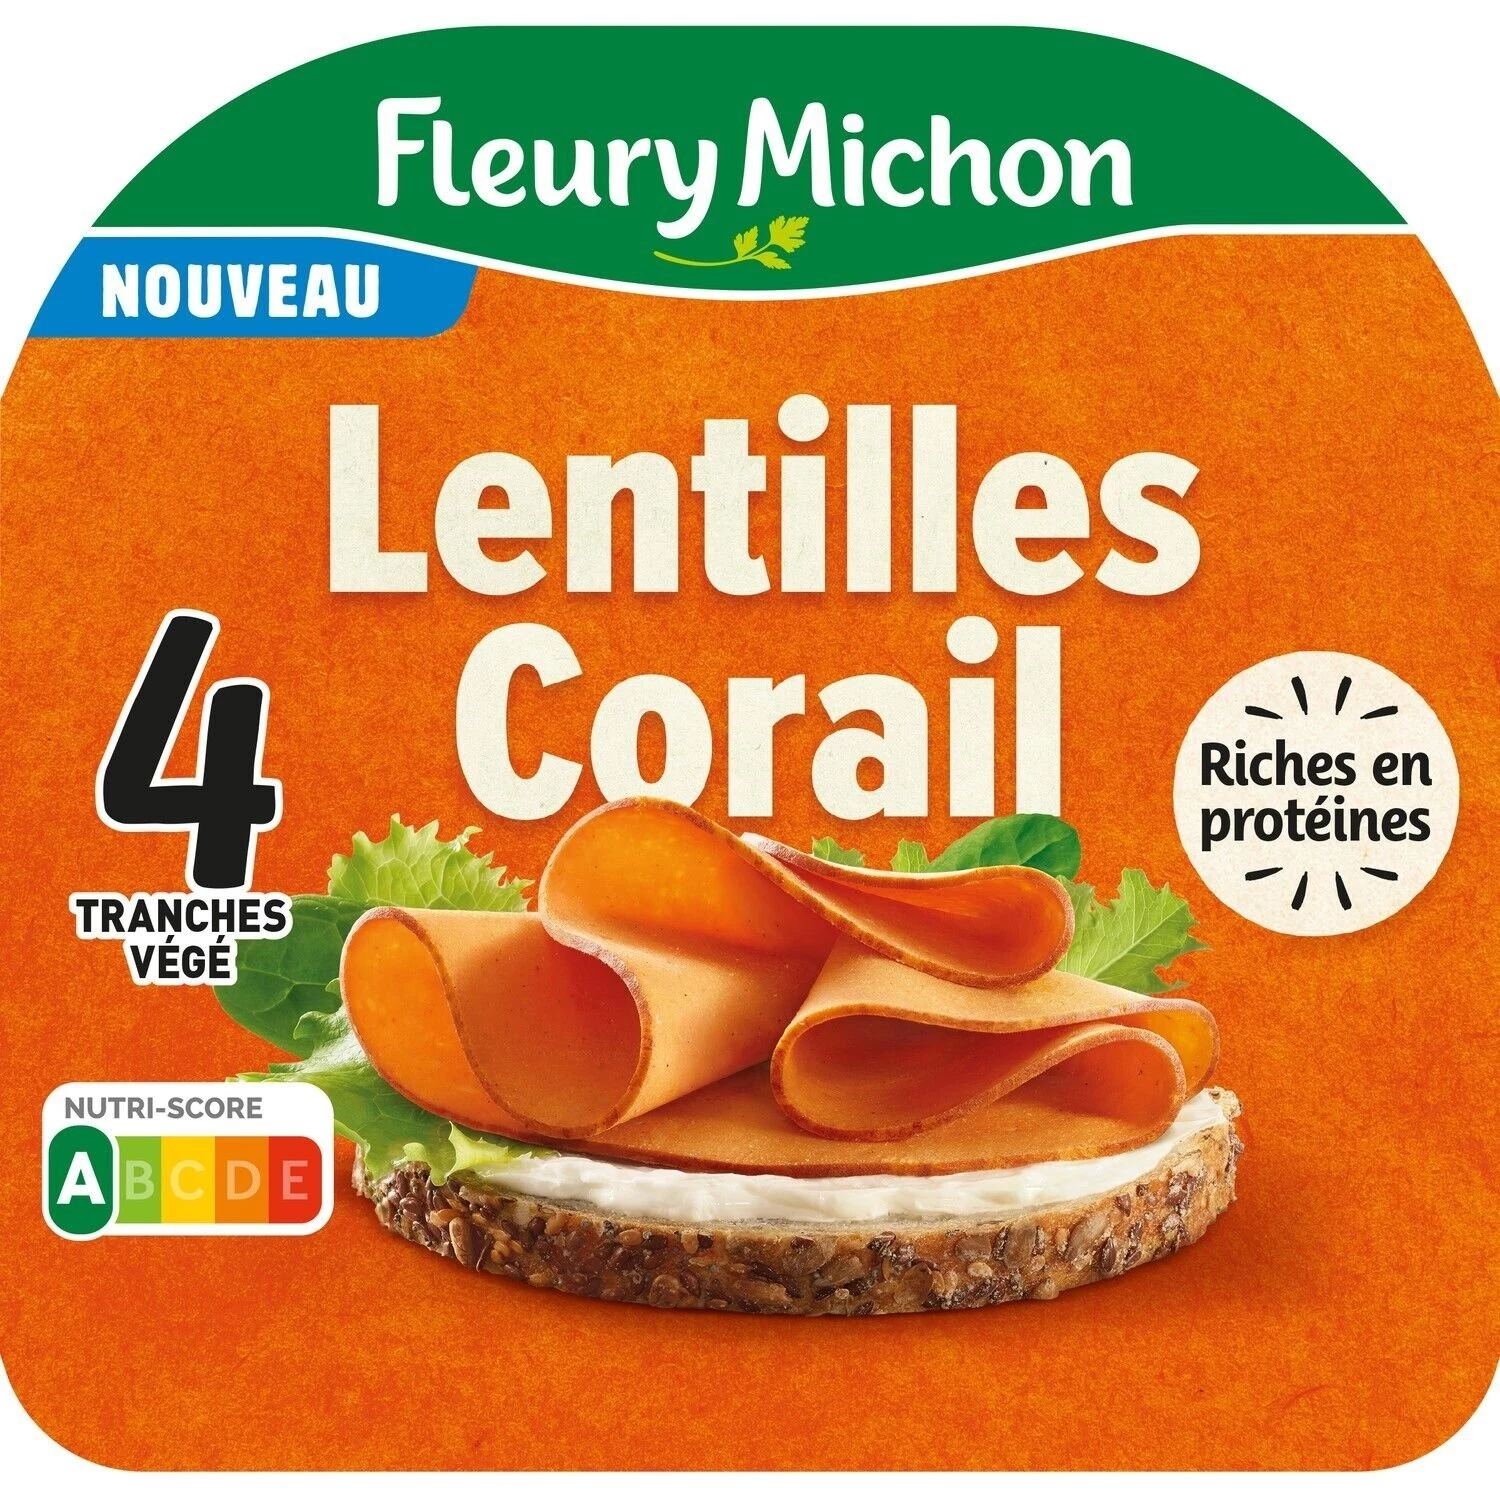 4 Tr Lentilles Corail